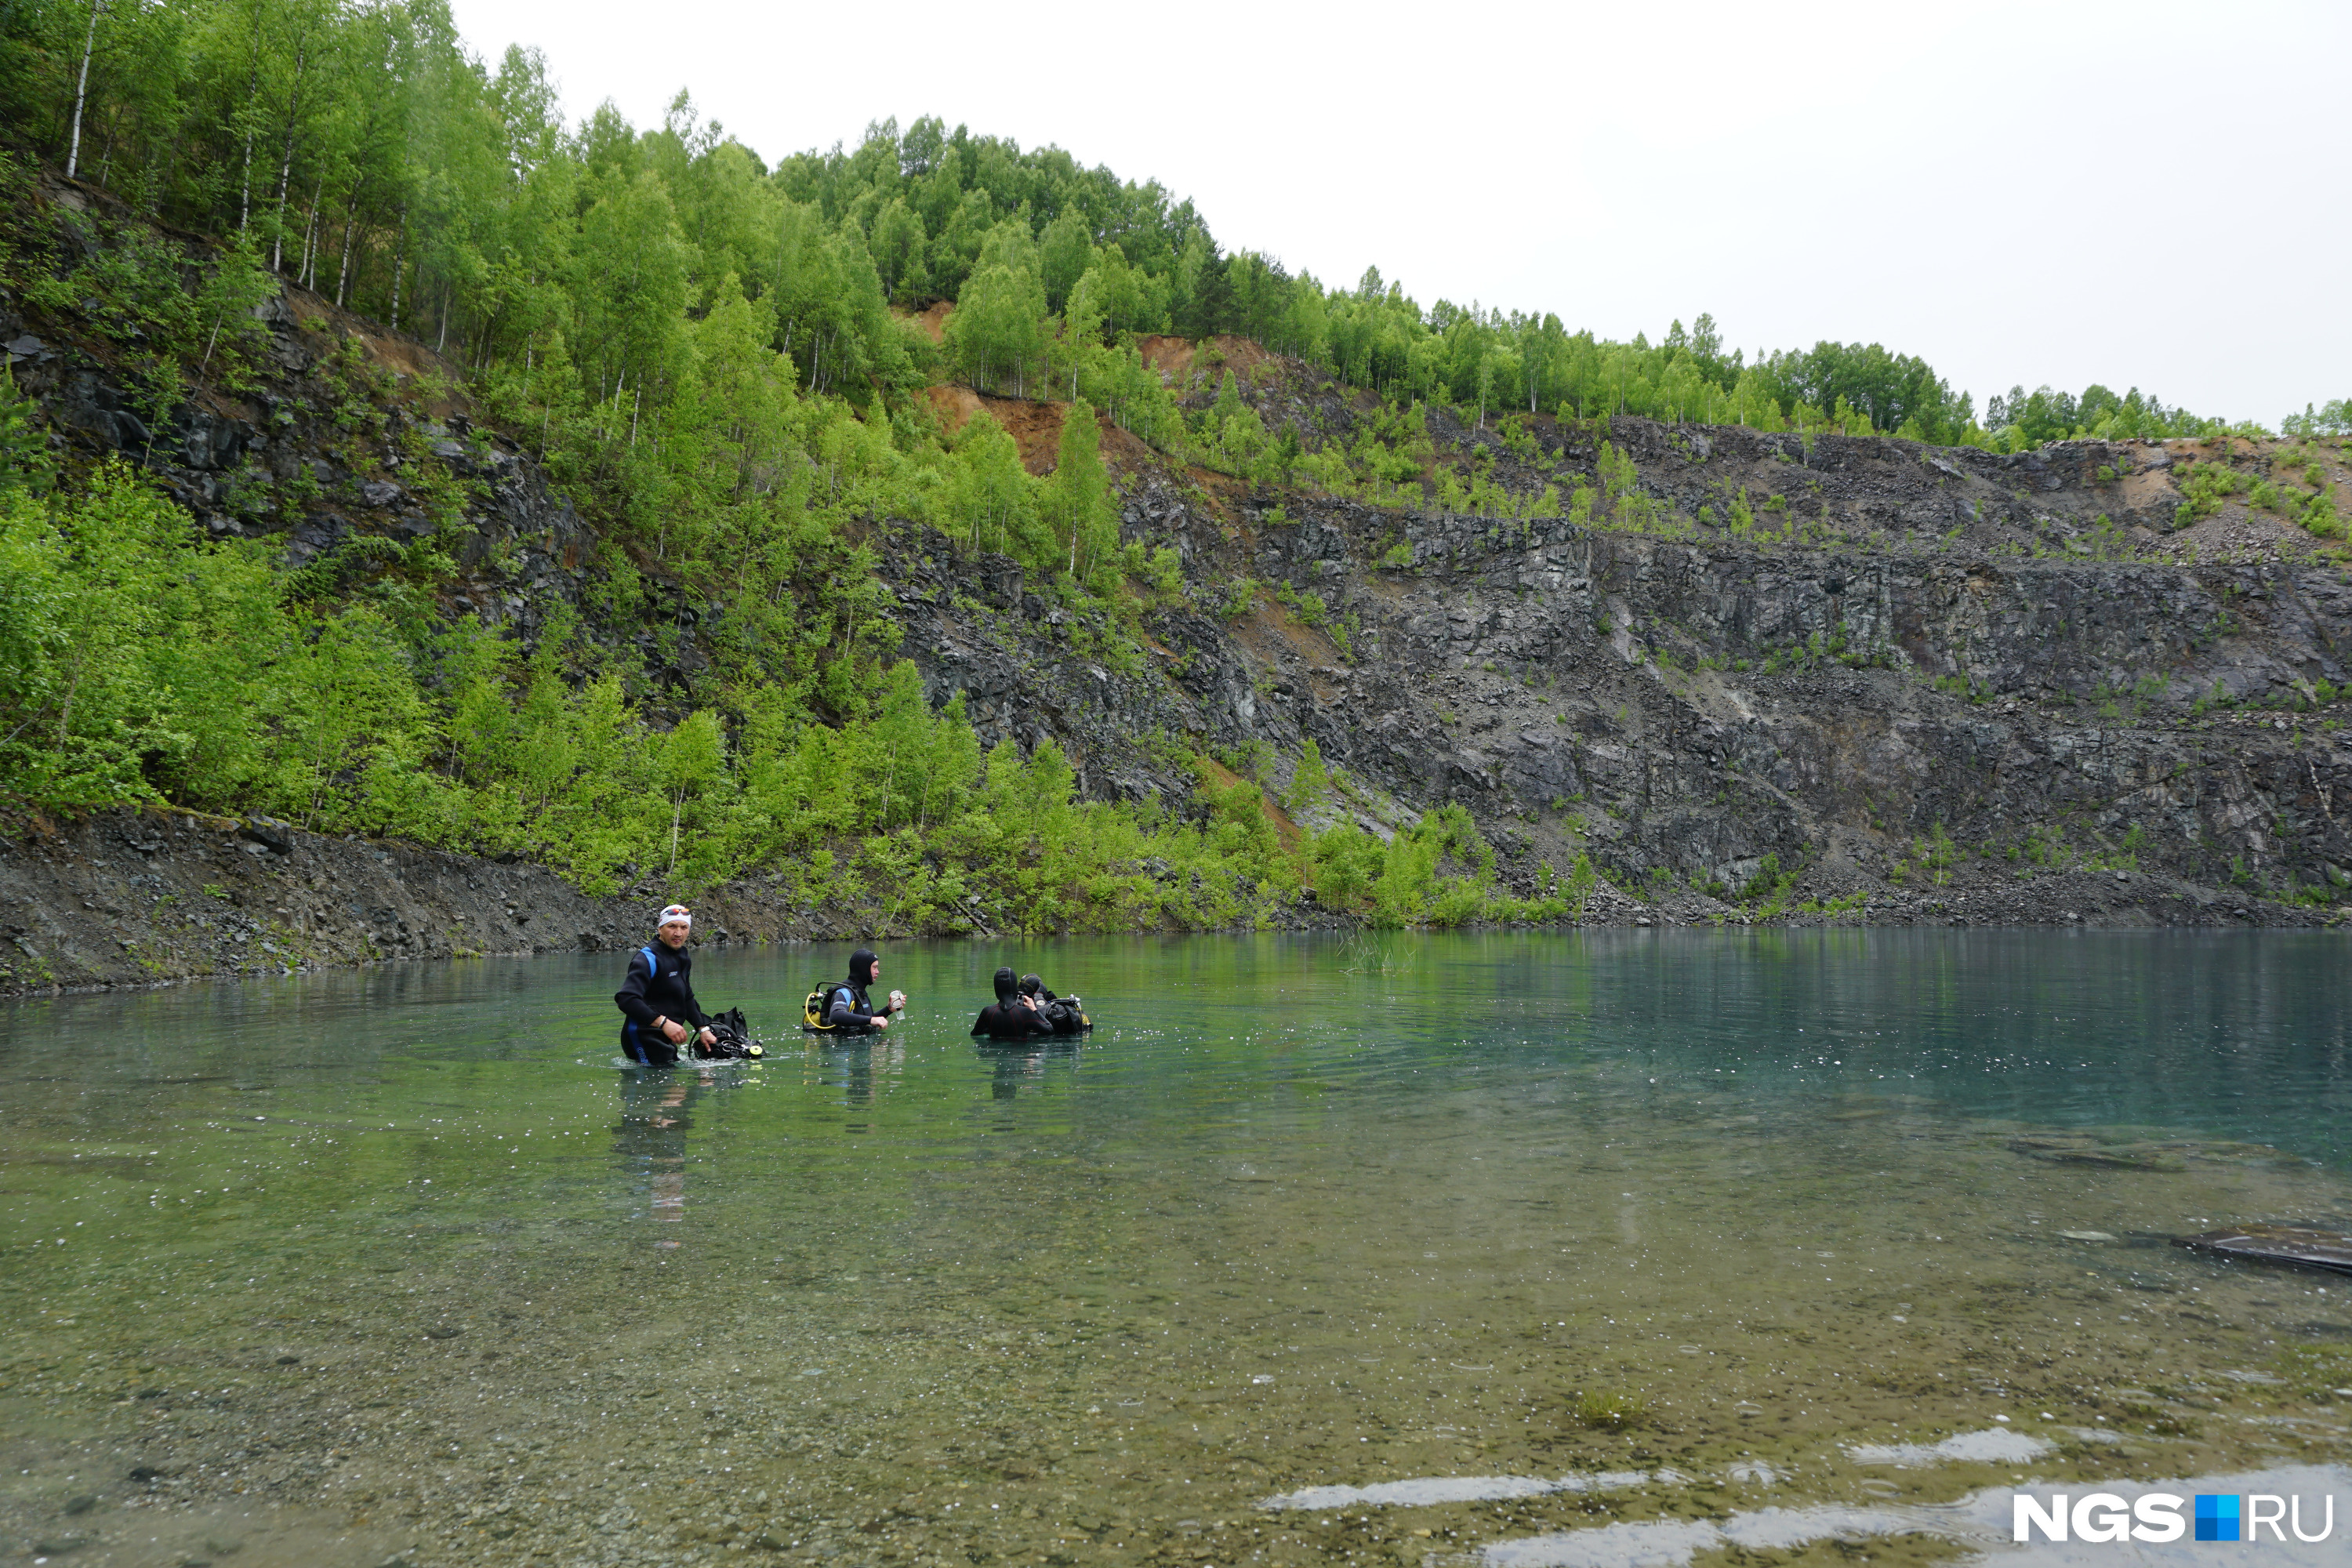 Озеро Темиртау — затопленный карьер, в котором раньше добывали железную руду. Сейчас там проходят дайв-погружения